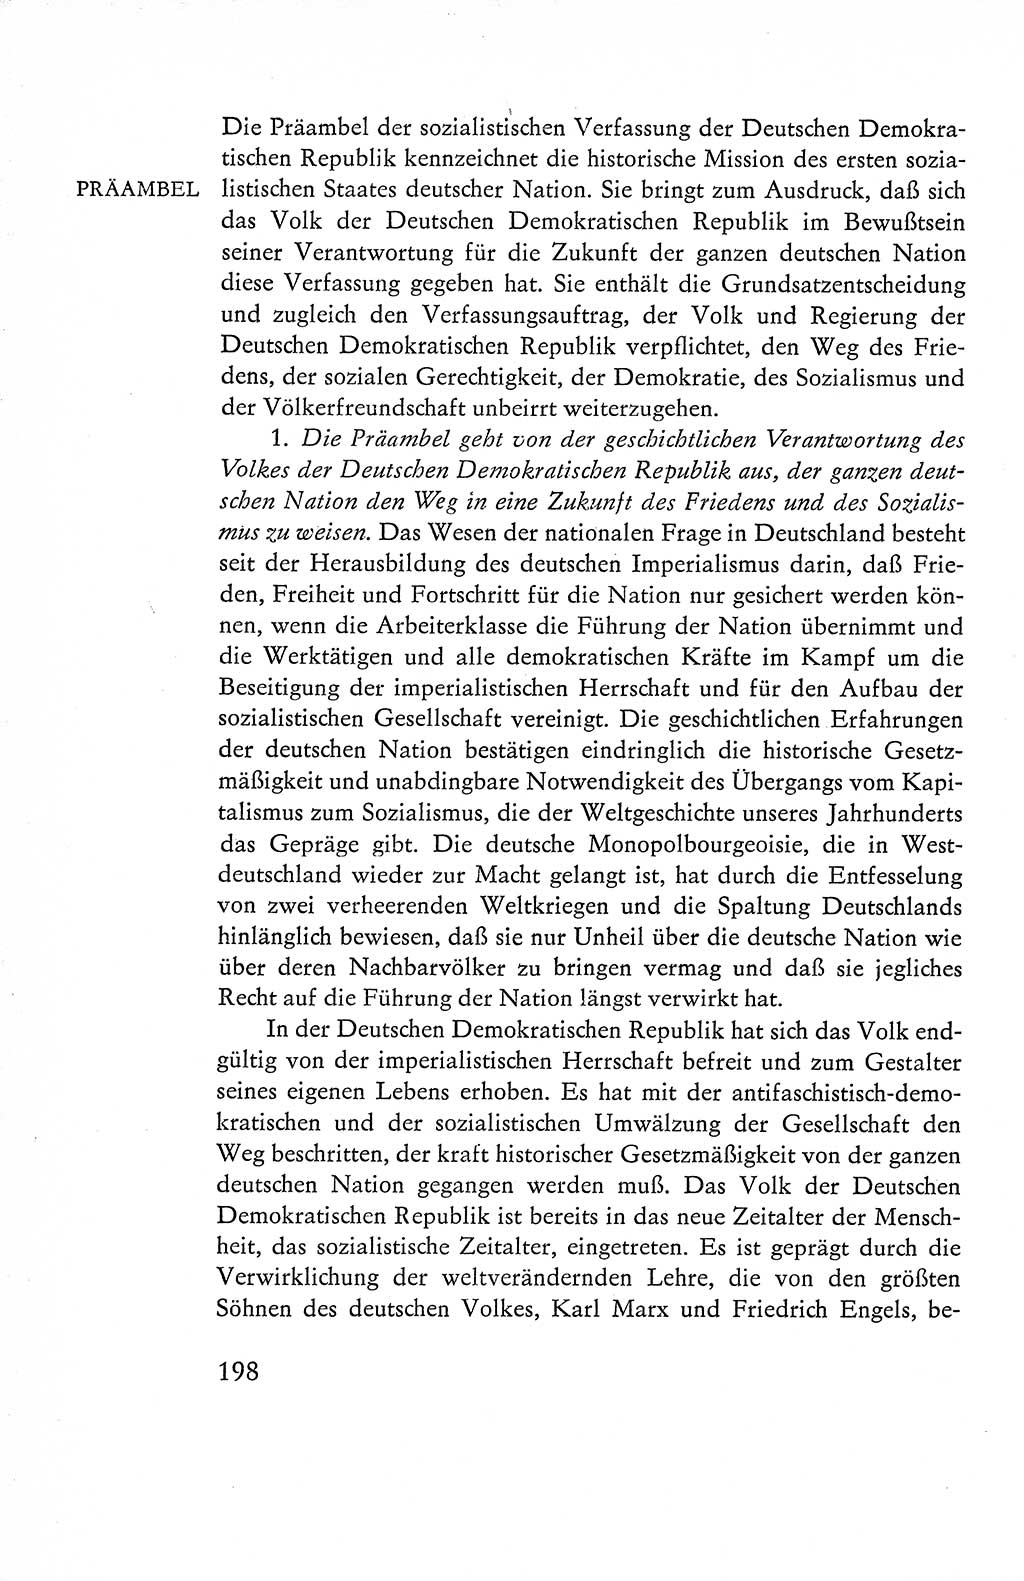 Verfassung der Deutschen Demokratischen Republik (DDR), Dokumente, Kommentar 1969, Band 1, Seite 198 (Verf. DDR Dok. Komm. 1969, Bd. 1, S. 198)